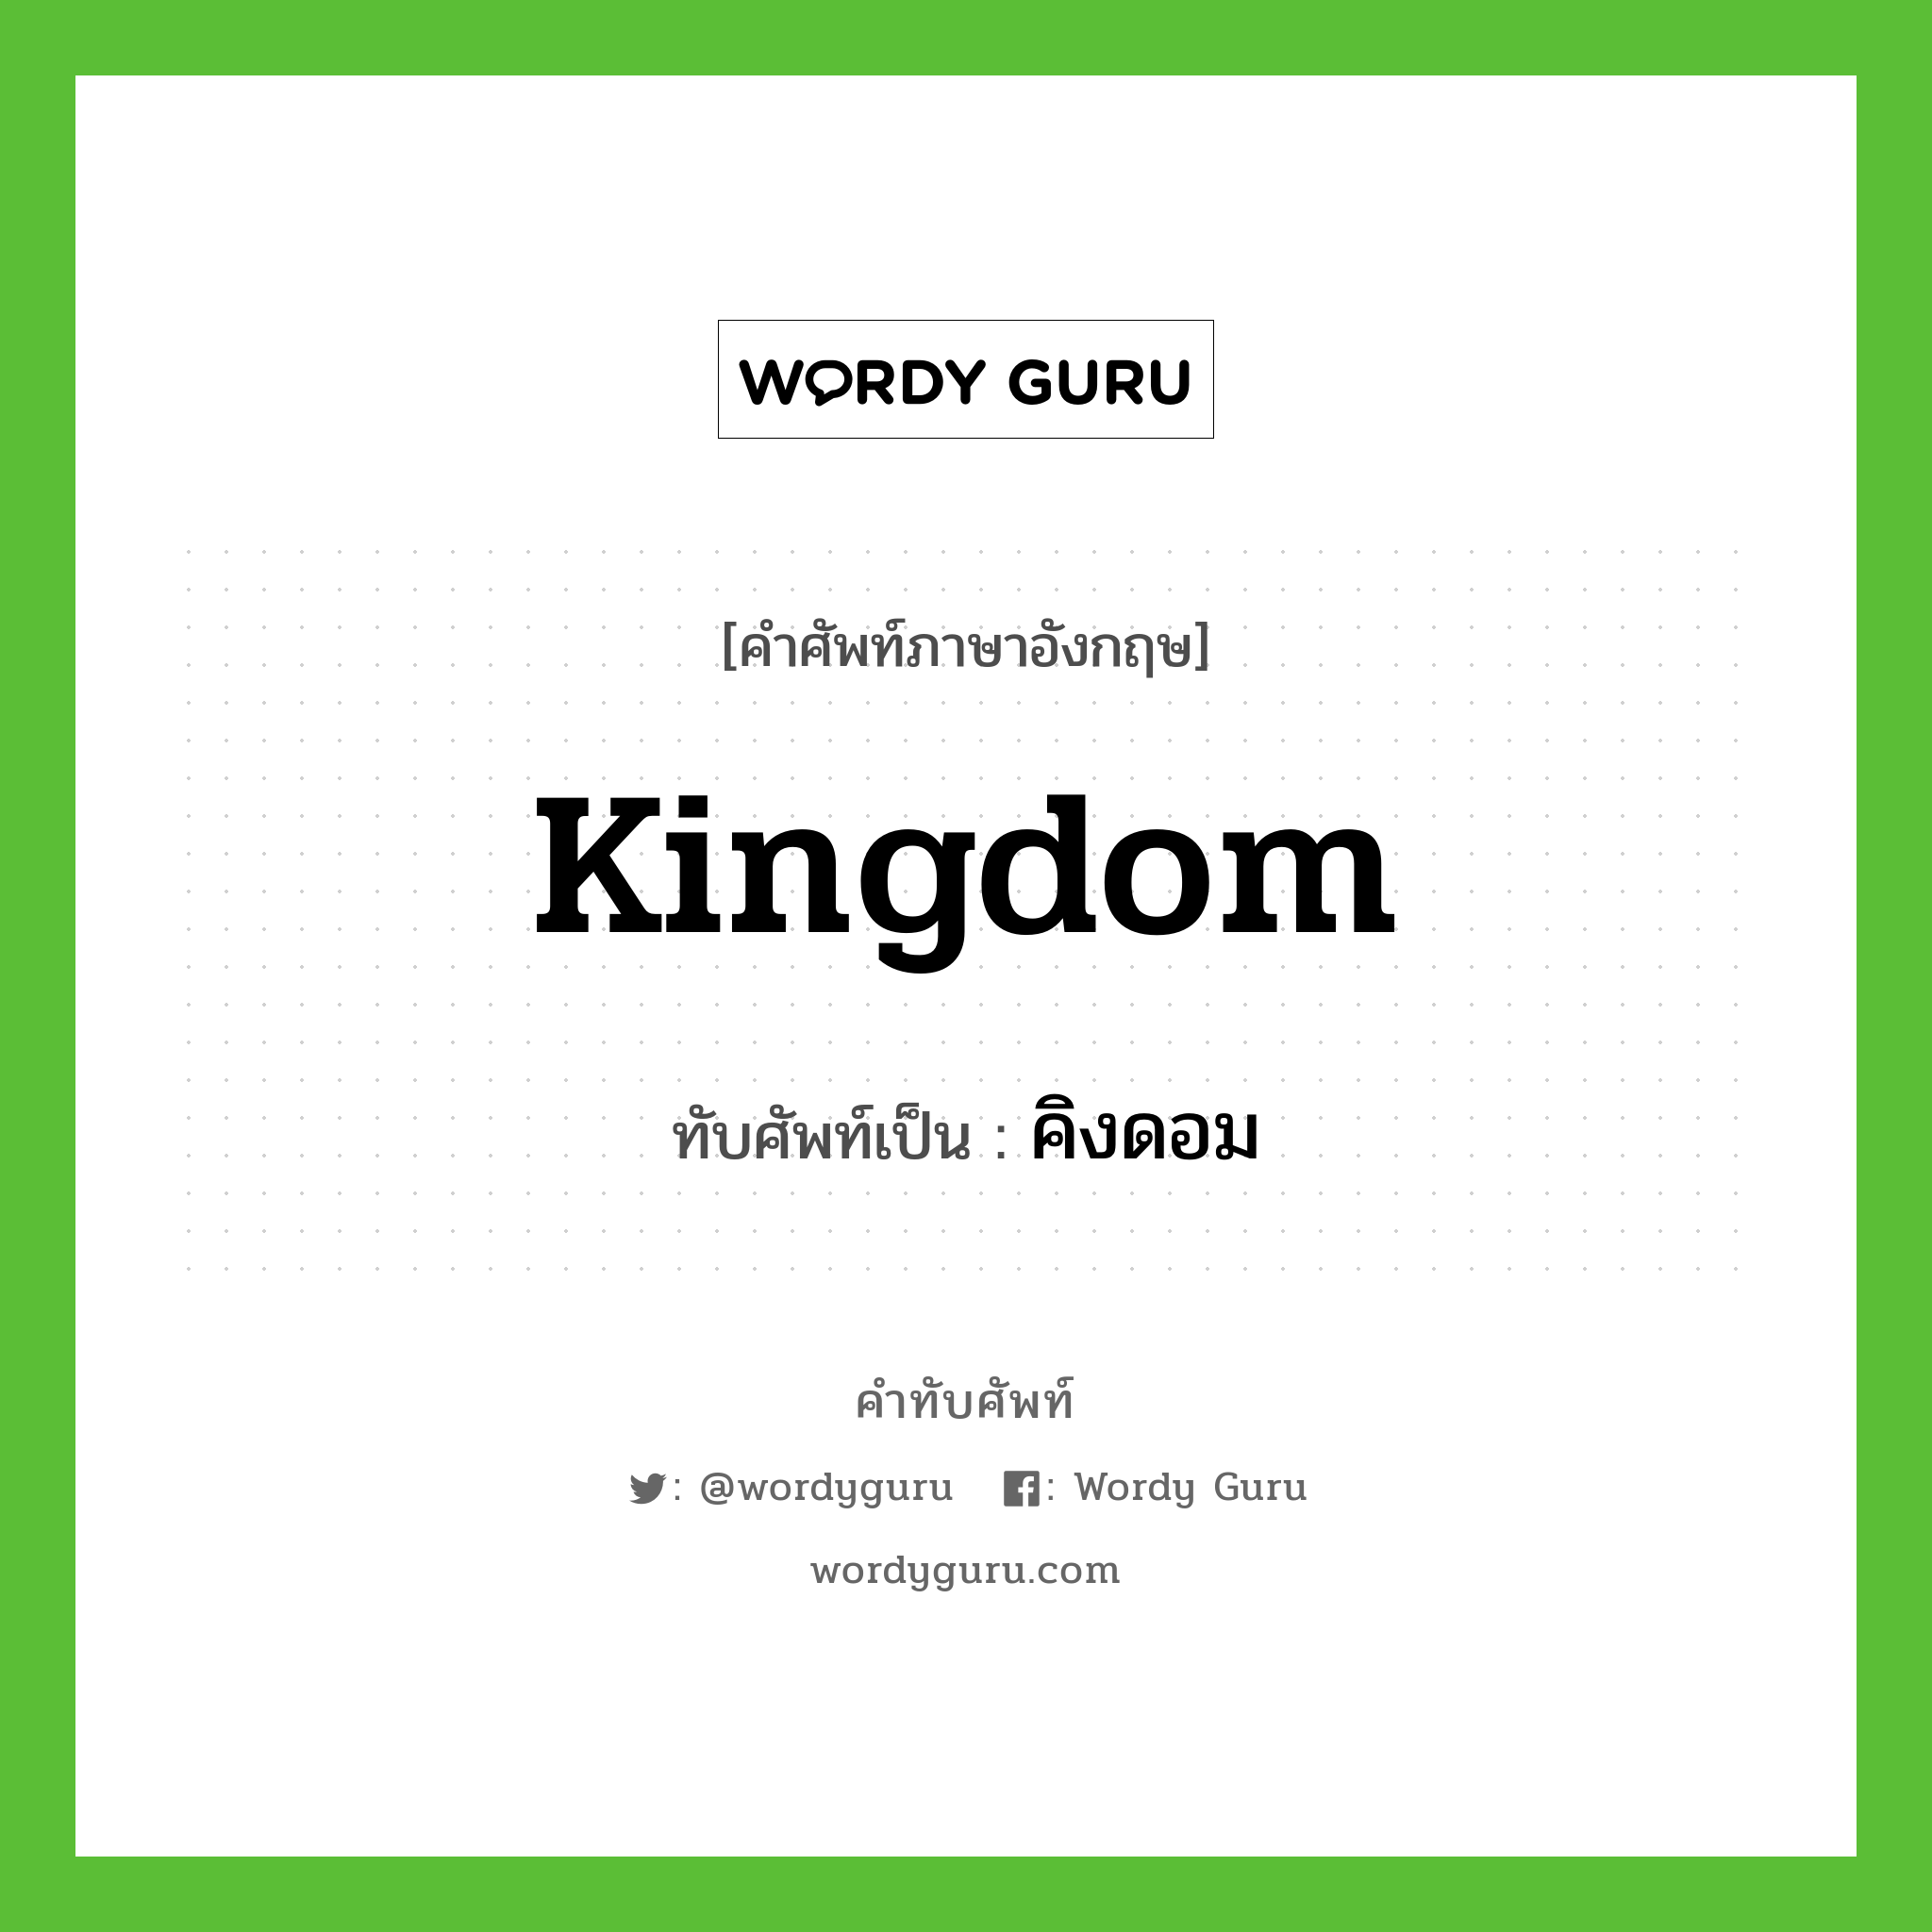 kingdom เขียนเป็นคำไทยว่าอะไร?, คำศัพท์ภาษาอังกฤษ kingdom ทับศัพท์เป็น คิงดอม